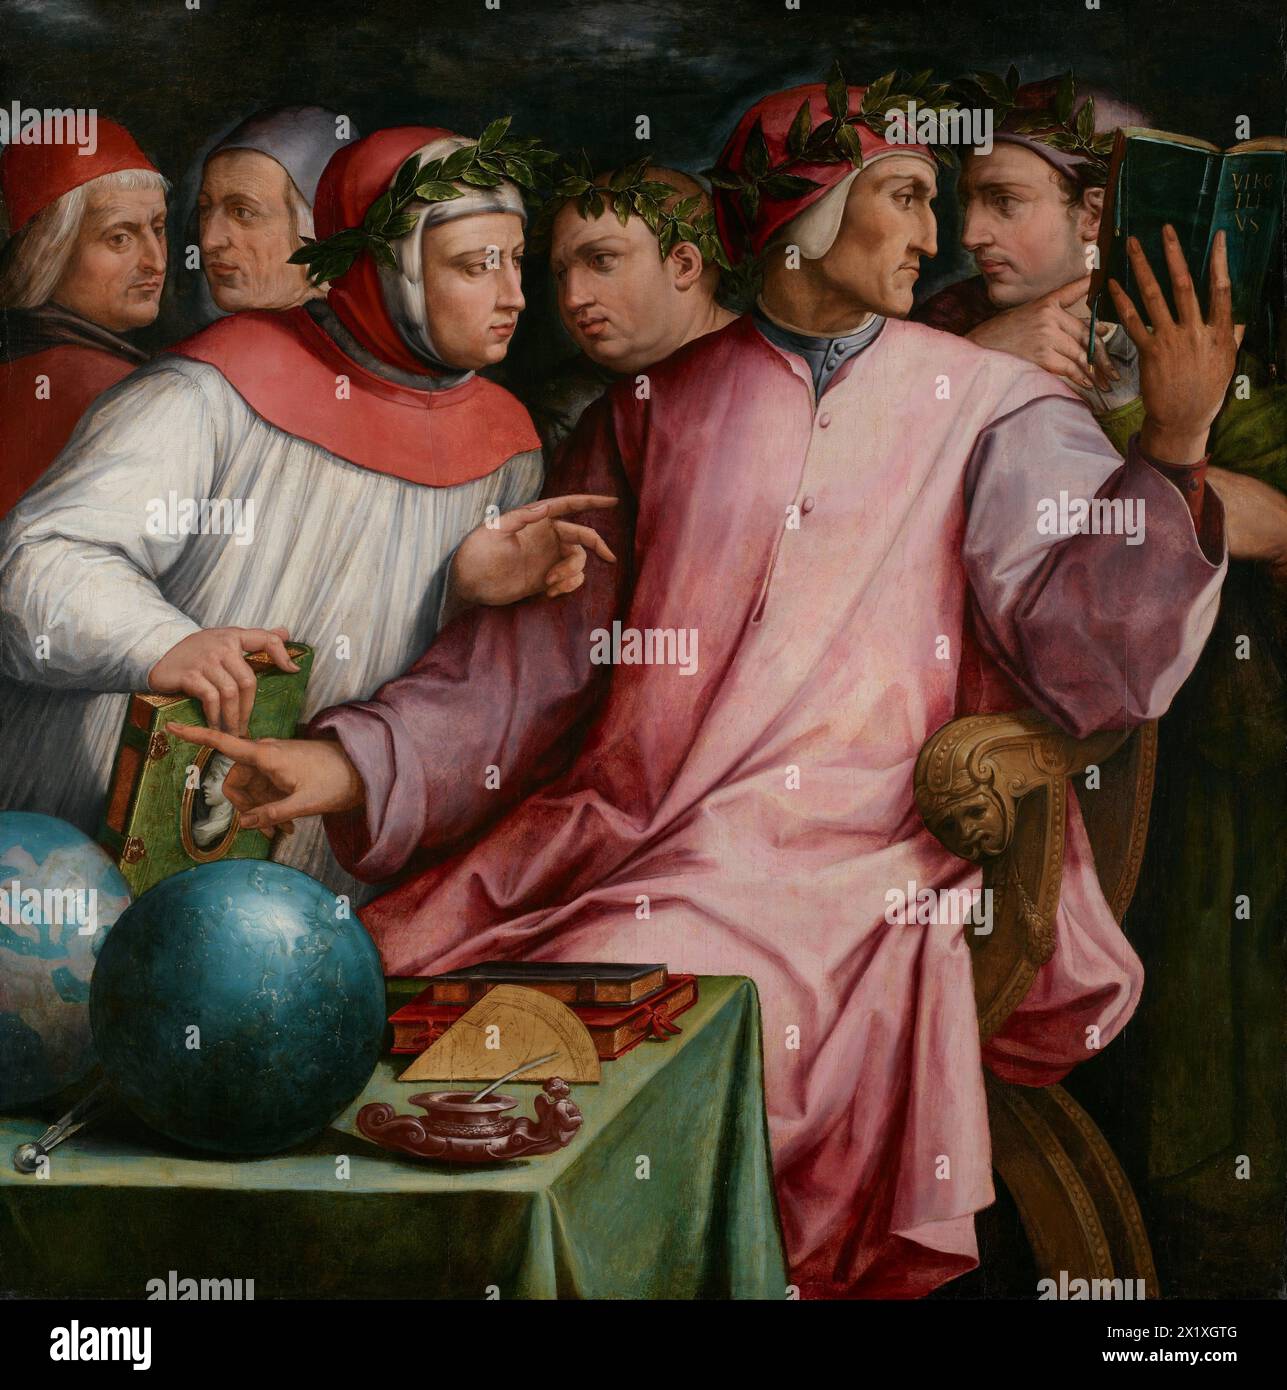 Sei poeti toscani di Giorgio Vasari, c. 1544; da sinistra a destra: Cristoforo Landino, Marsilio Ficino, Francesco Petrarca, Giovanni Boccaccio, Dante Alighieri, e Guido Cavalcanti[10] Foto Stock